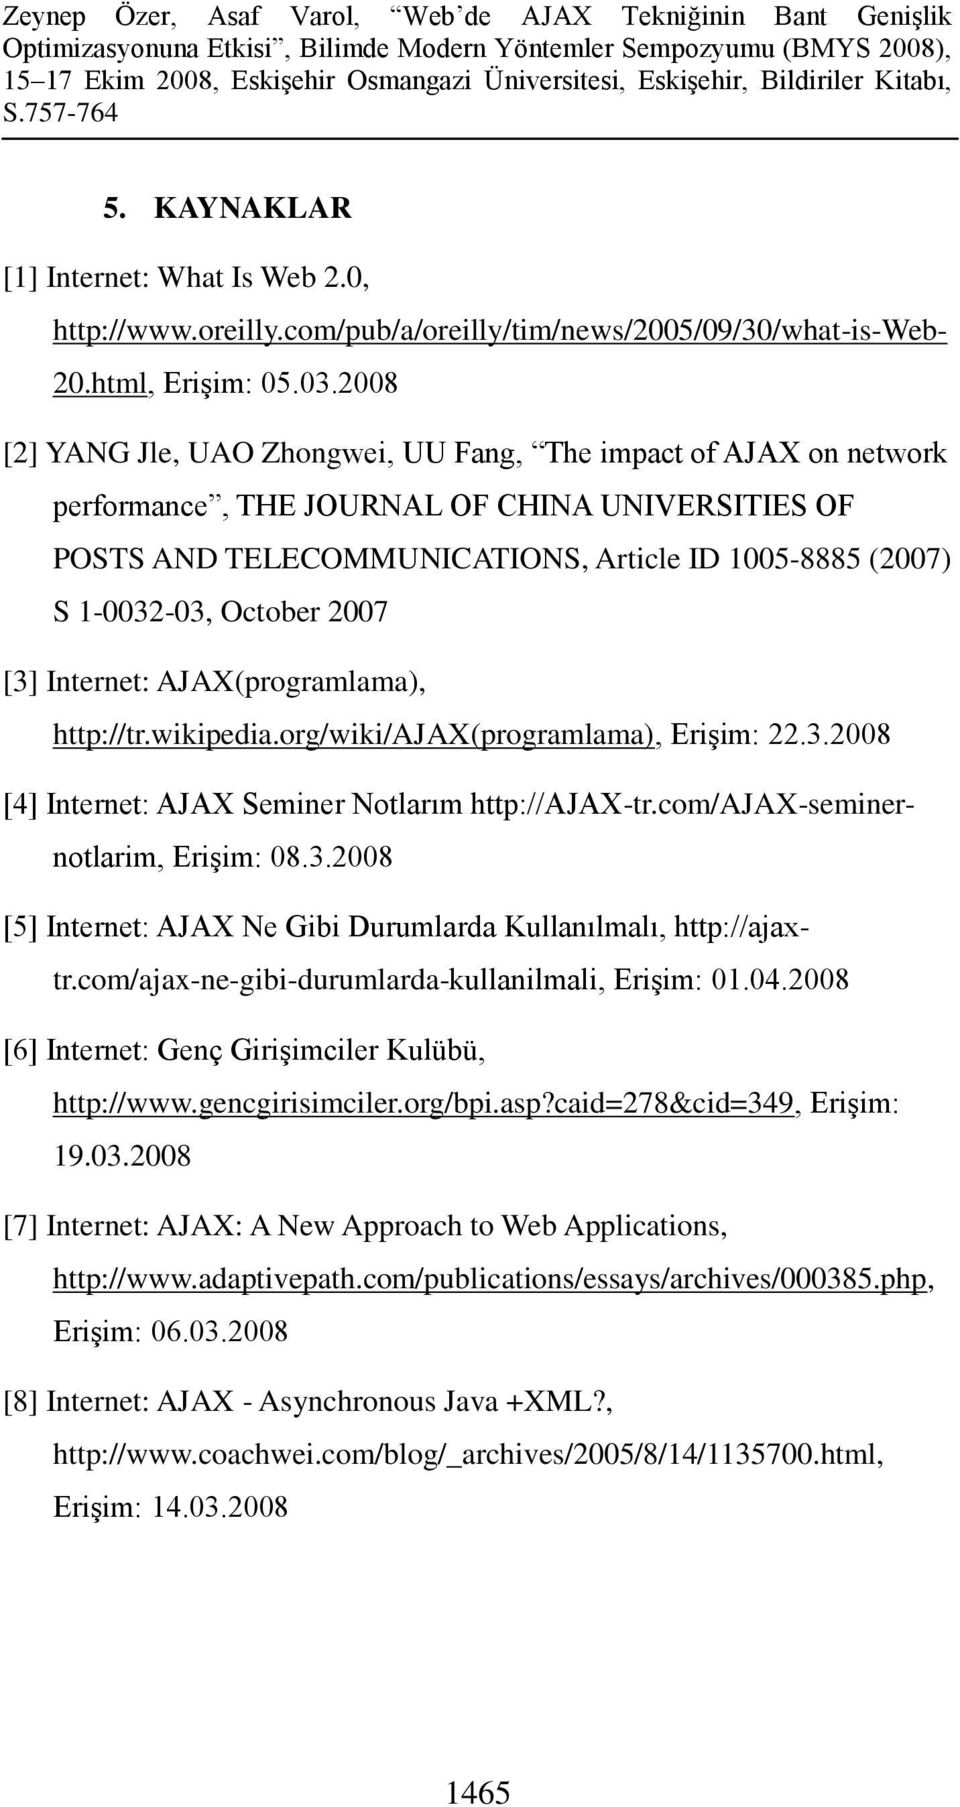 October 2007 [3] Internet: AJAX(programlama), http://tr.wikipedia.org/wiki/ajax(programlama), Erişim: 22.3.2008 [4] Internet: AJAX Seminer Notlarım http://ajax-tr.com/ajax-seminernotlarim, Erişim: 08.